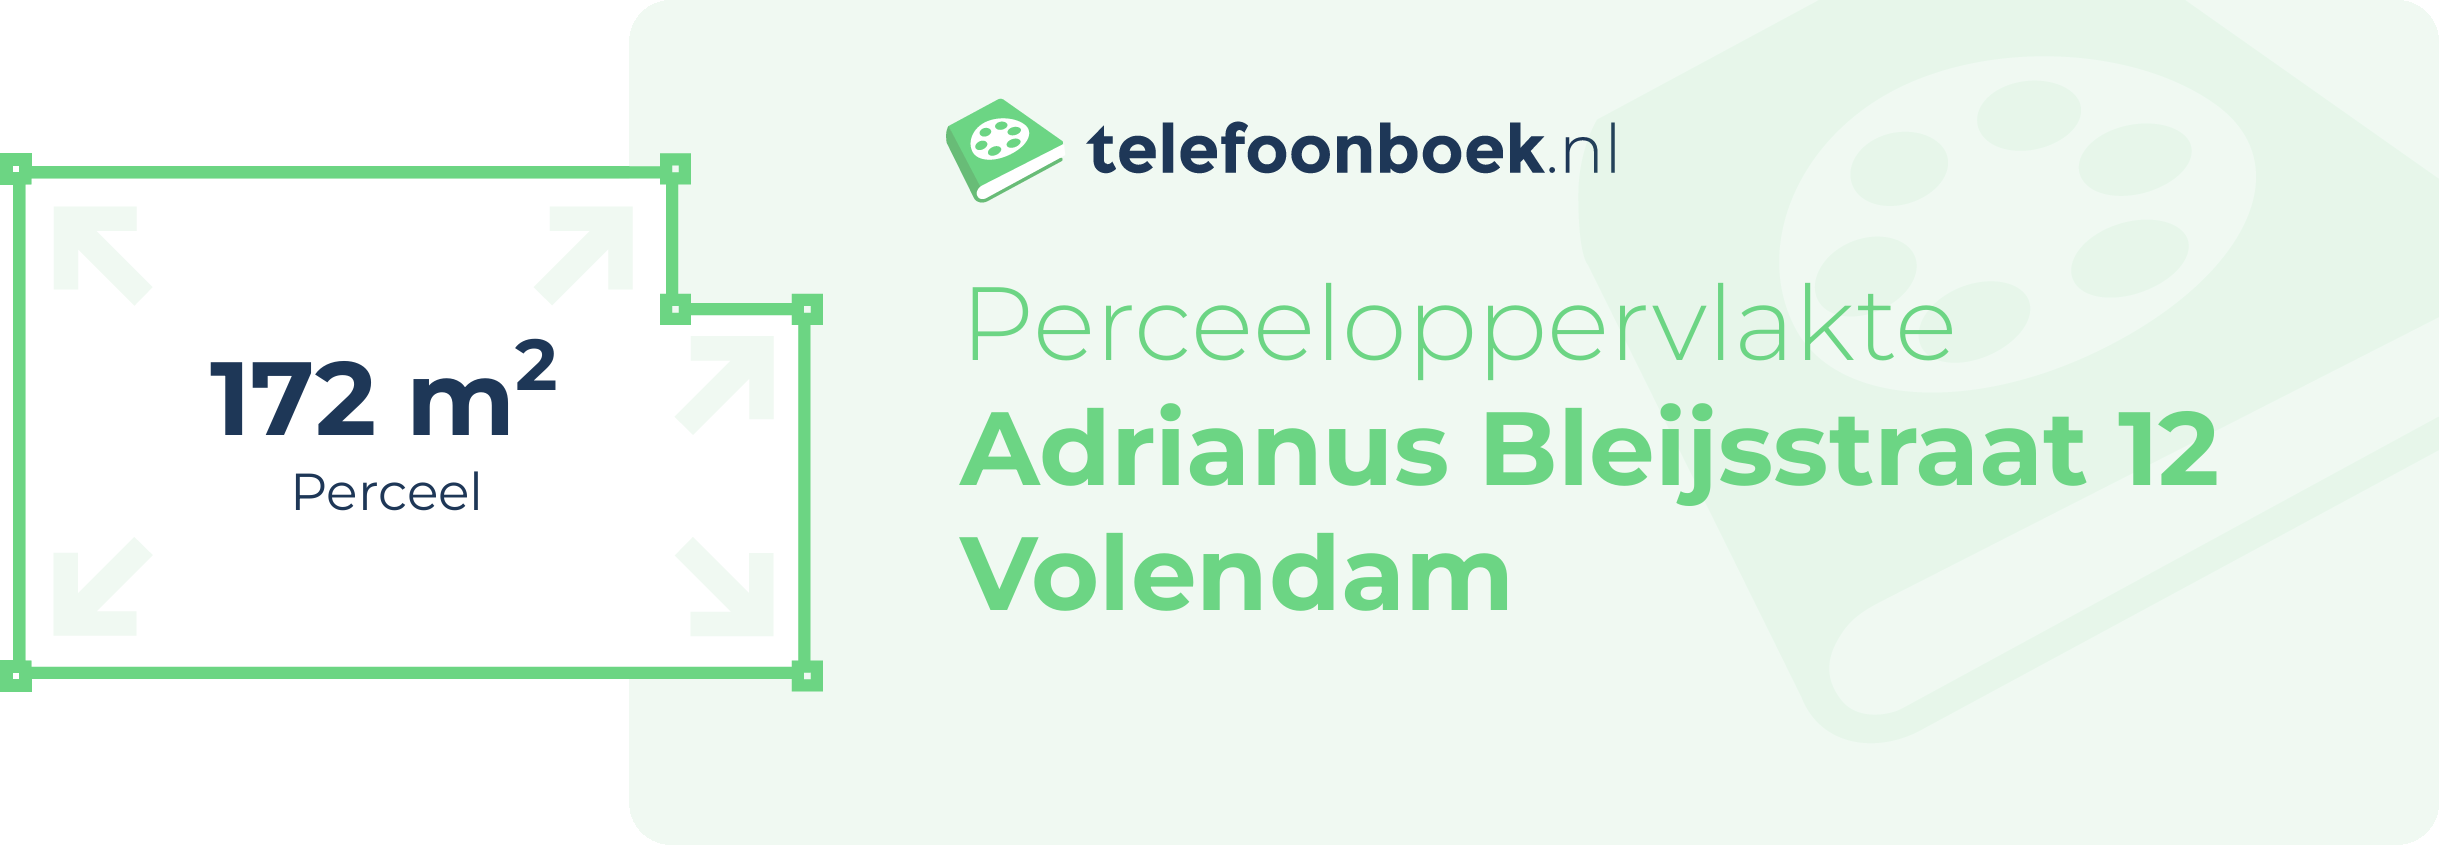 Perceeloppervlakte Adrianus Bleijsstraat 12 Volendam